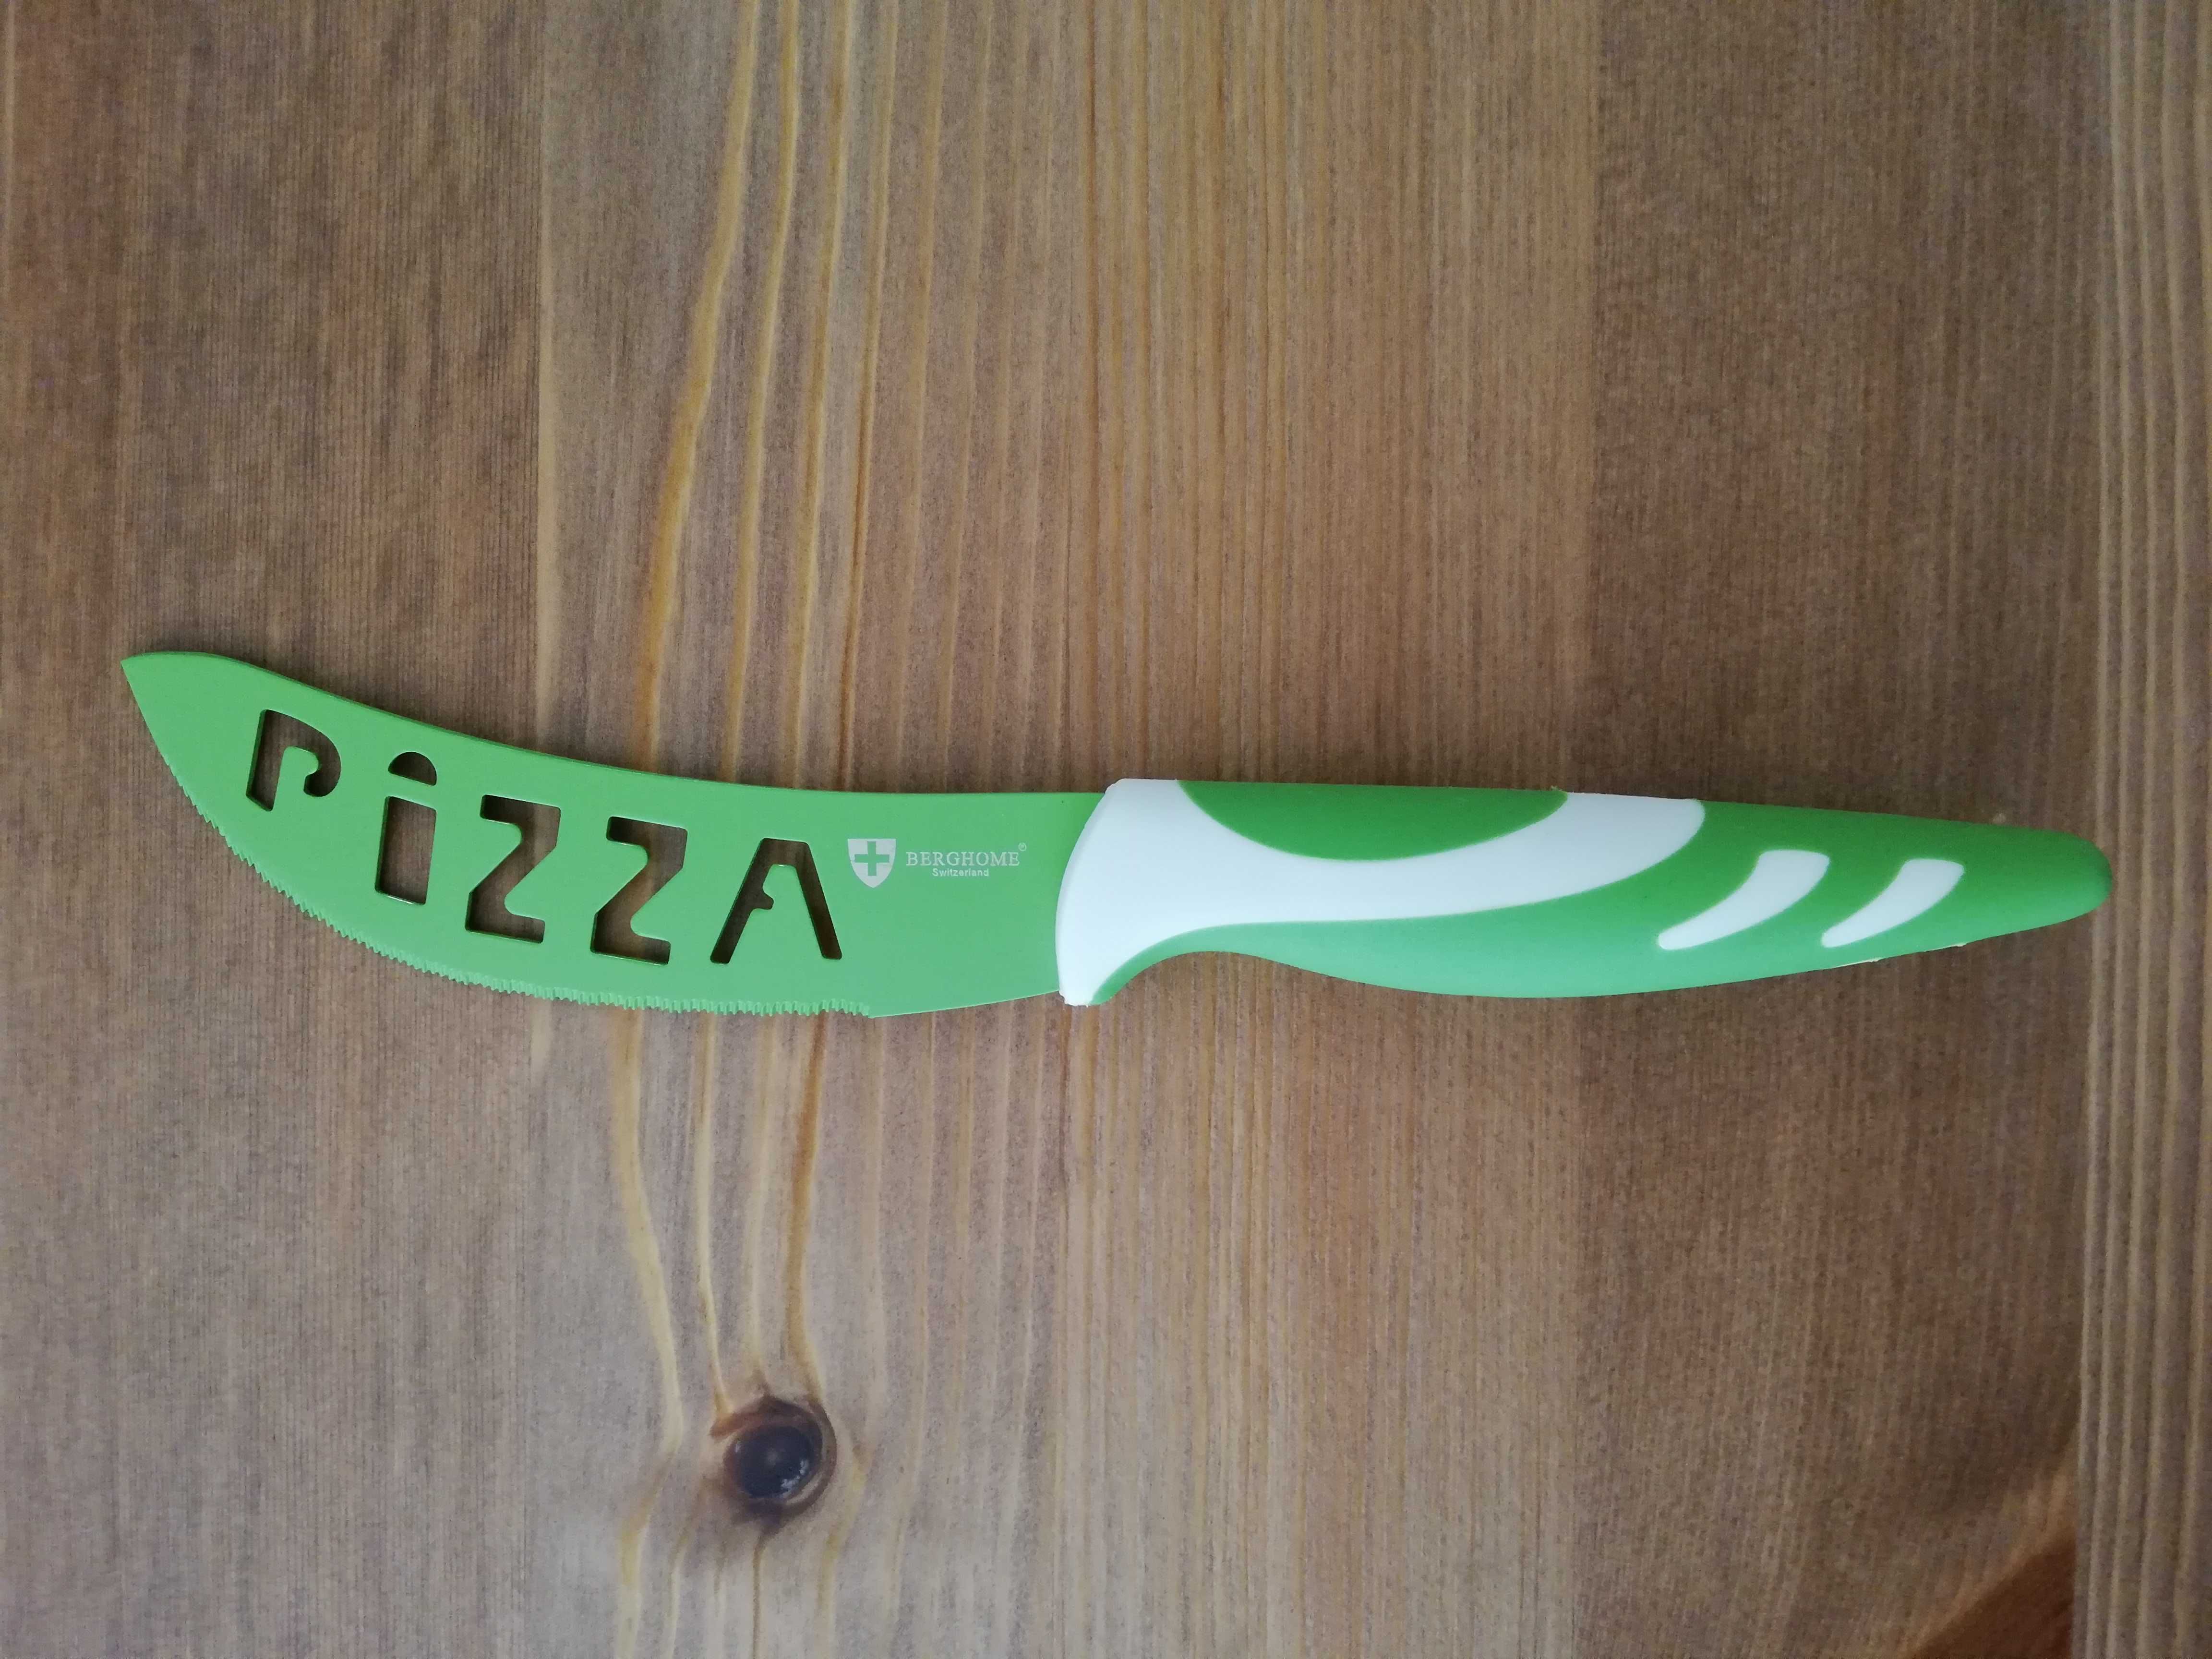 nóż do pizzy pizza Berghome Switzerland